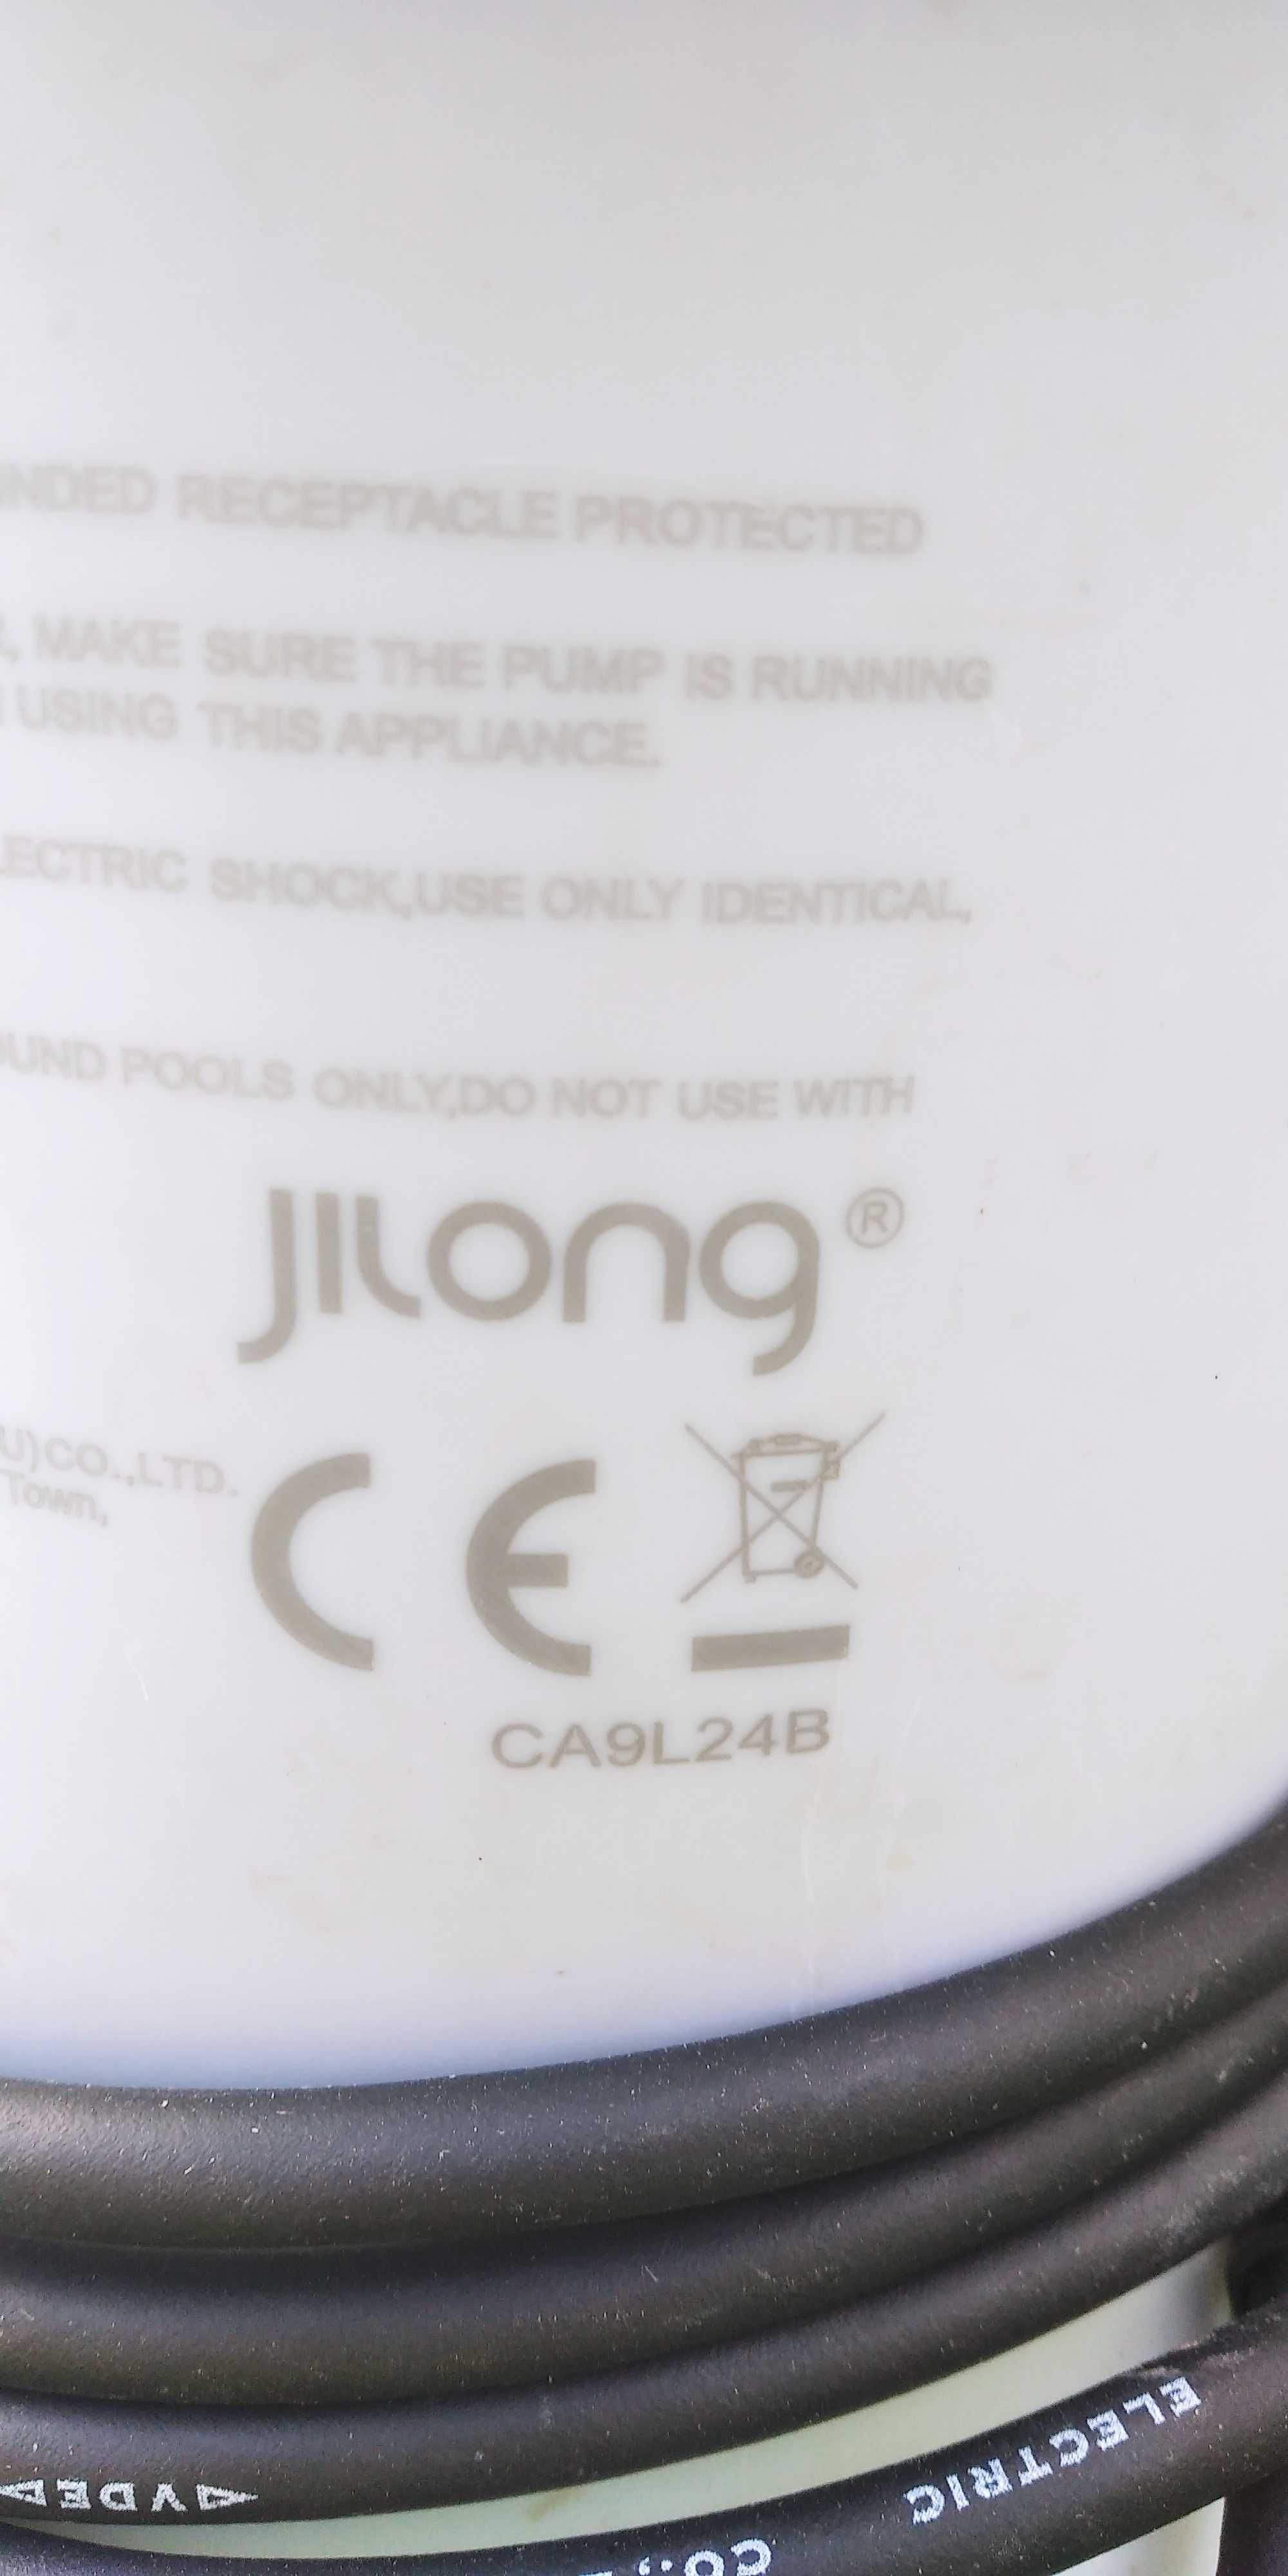 pompa do basenu Jilong CA9L24B + 3 nowe filtry. Cena za komplet!